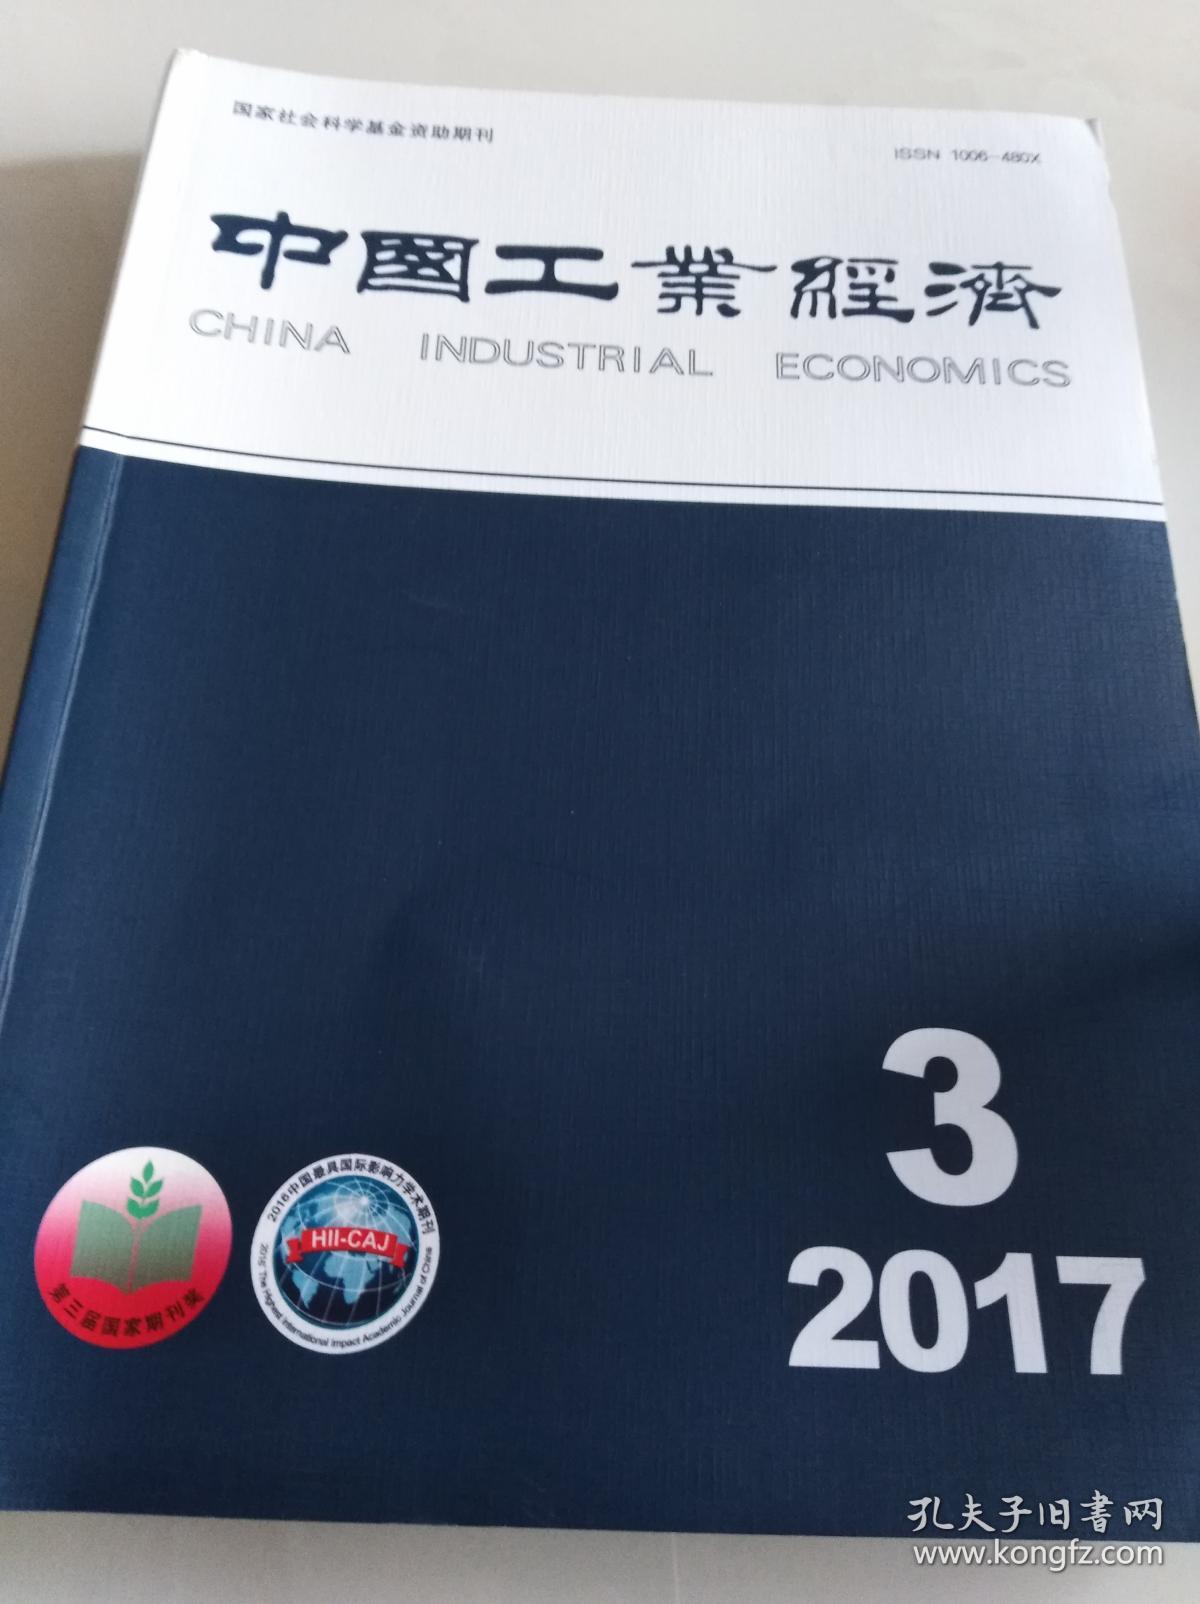 中国工业经济(月刊)2017年第3期(包括:《前沿技